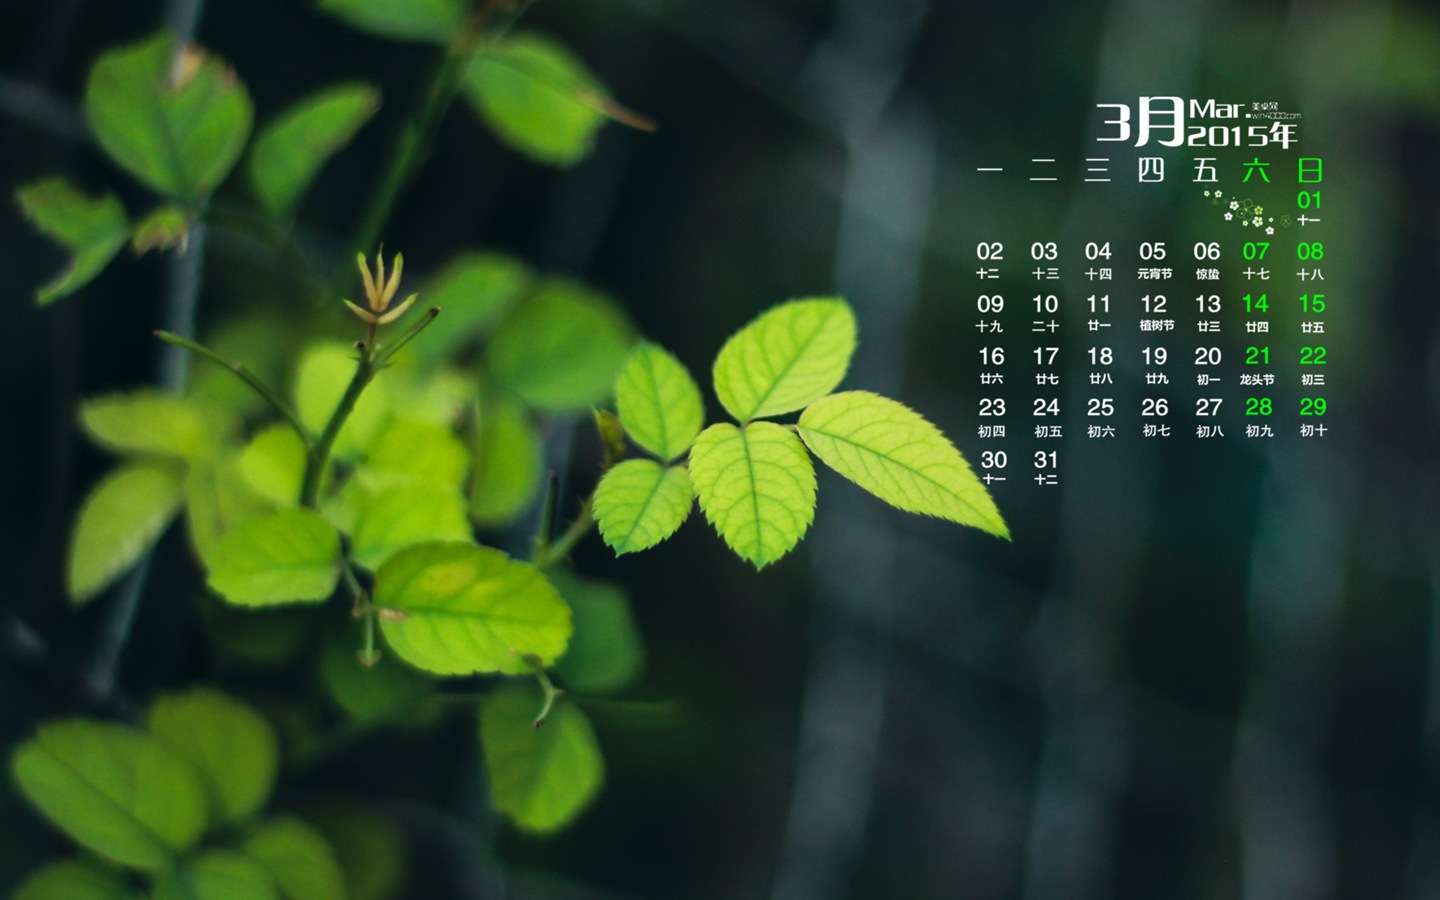 March 2015 Calendar wallpaper (1) #19 - 1440x900